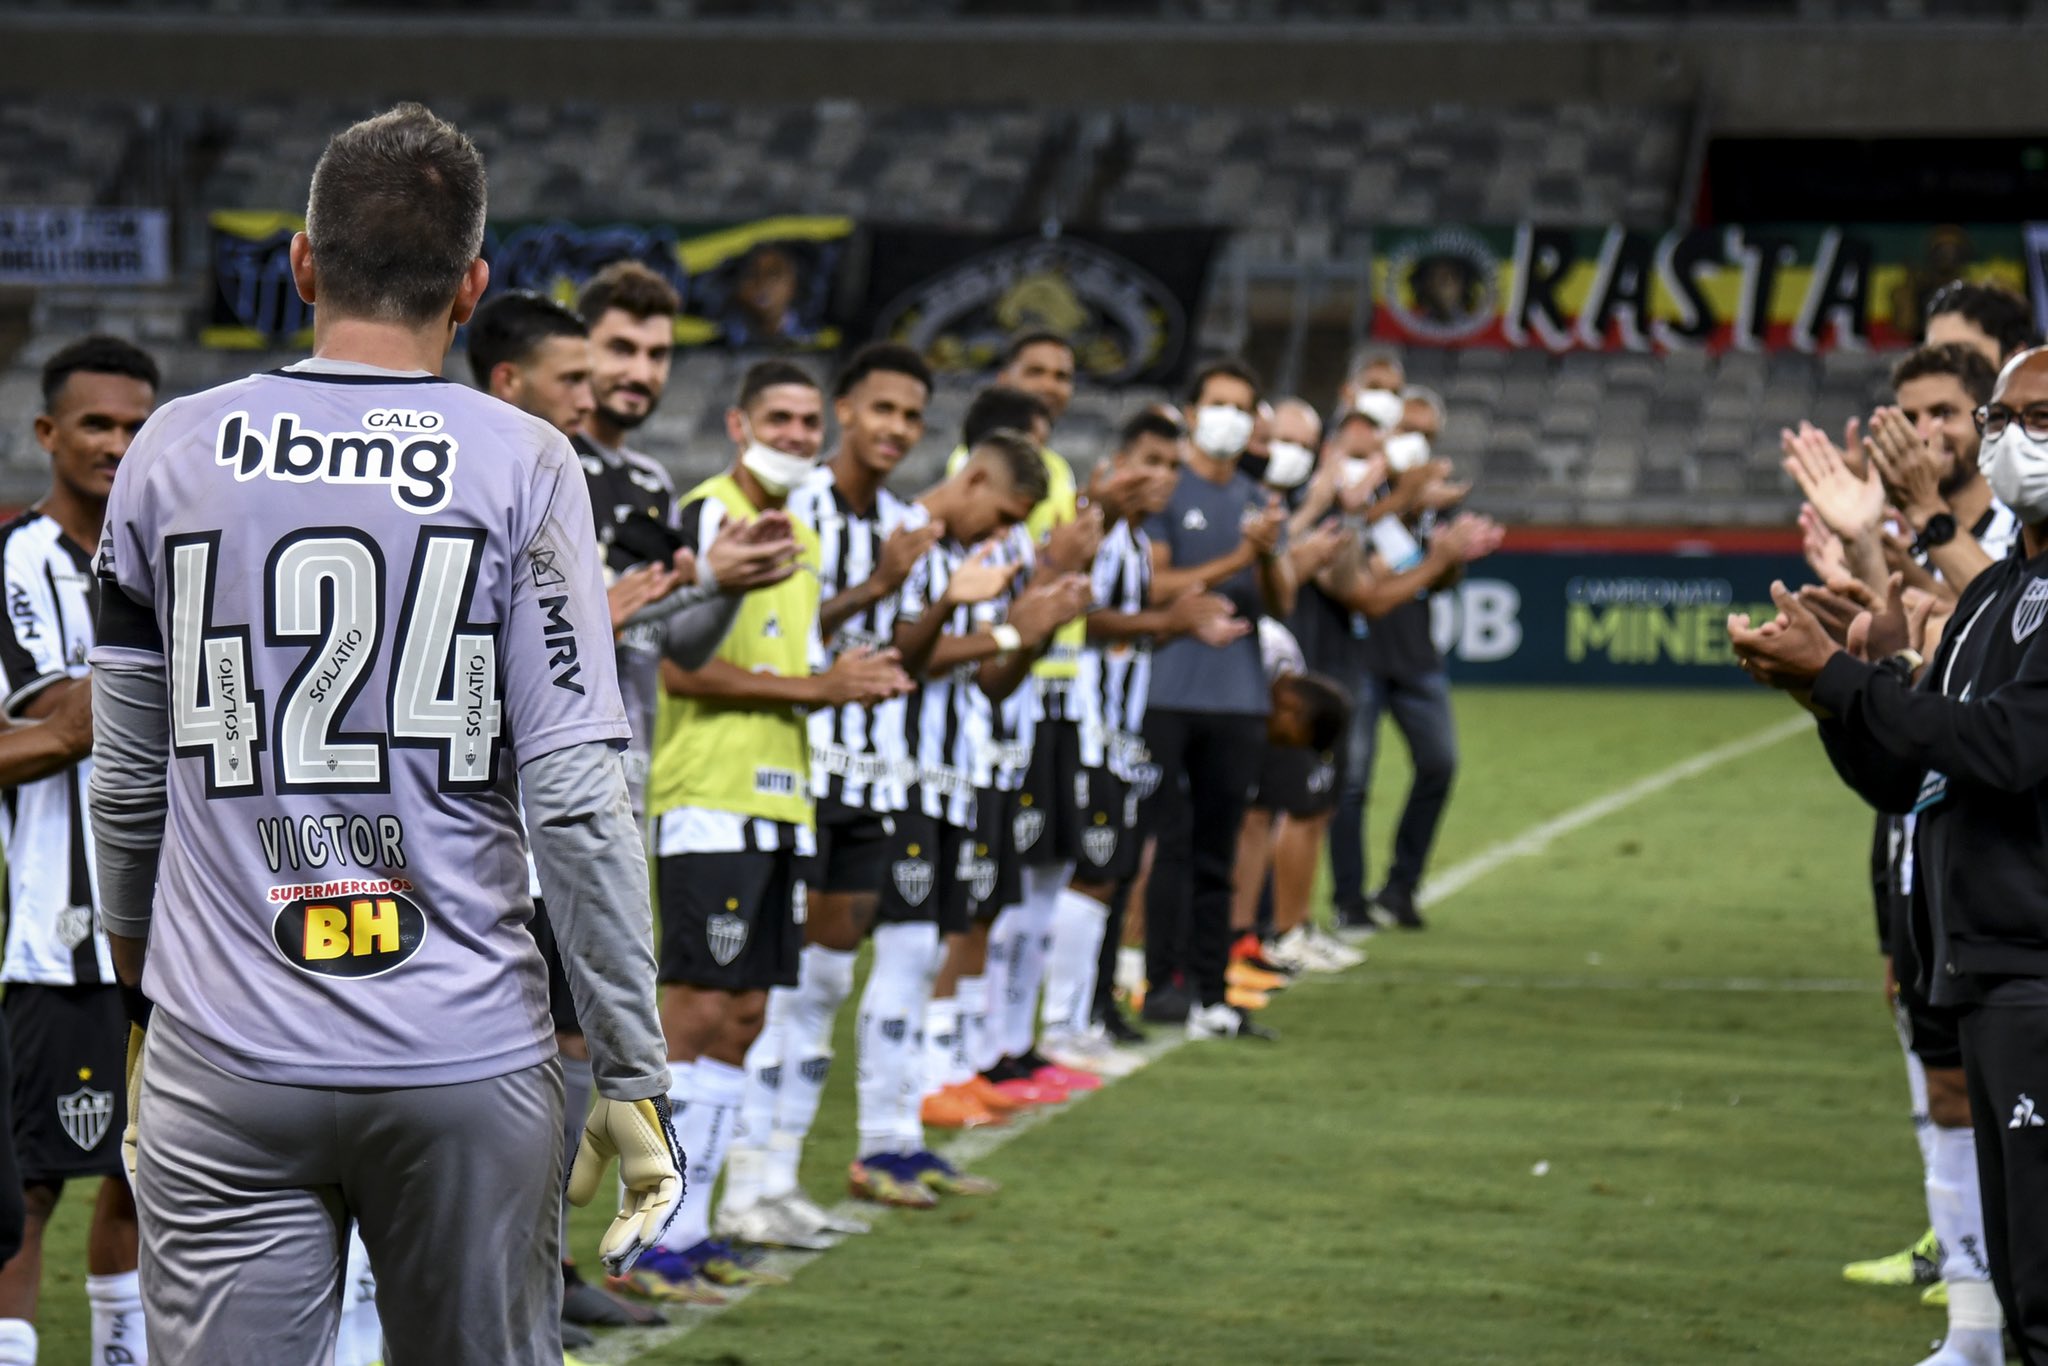 Victor encerra ciclo vitorioso no Mineirão sem sofrer gols e com as mãos eternizadas no estádio: 'Nosso salão de festas'